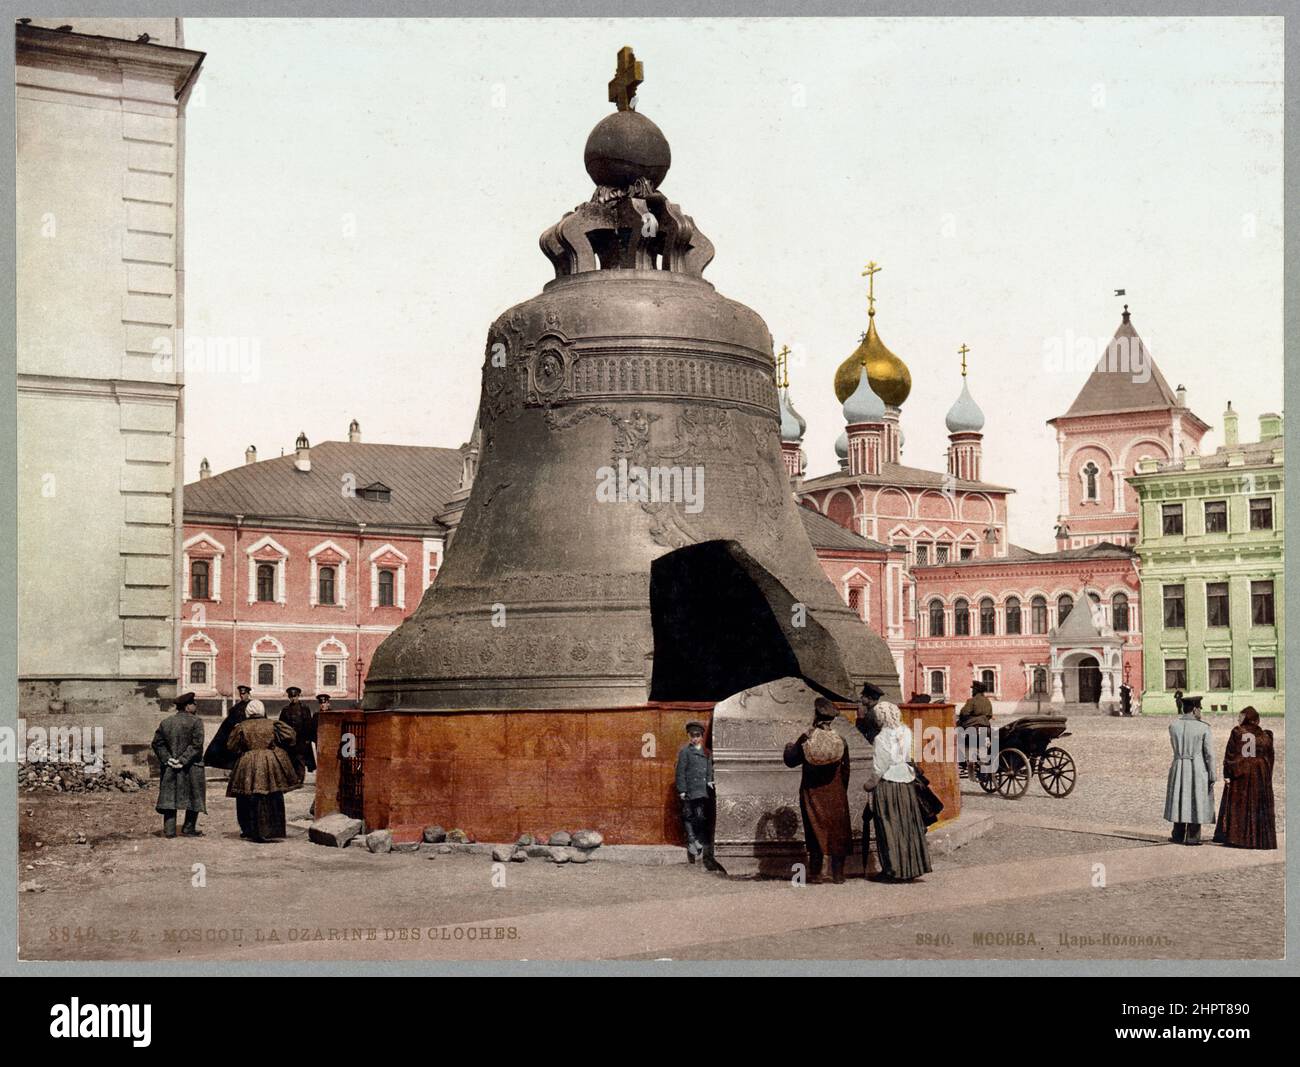 Foto vintage del rey de Bells (Tsar-kolokol) en el Kremlin de Moscú. 1900s El Tsar Bell (Tsar-kolokol), también conocido como el Tsarsky Kolokol, Tsar Kolokol I. Foto de stock